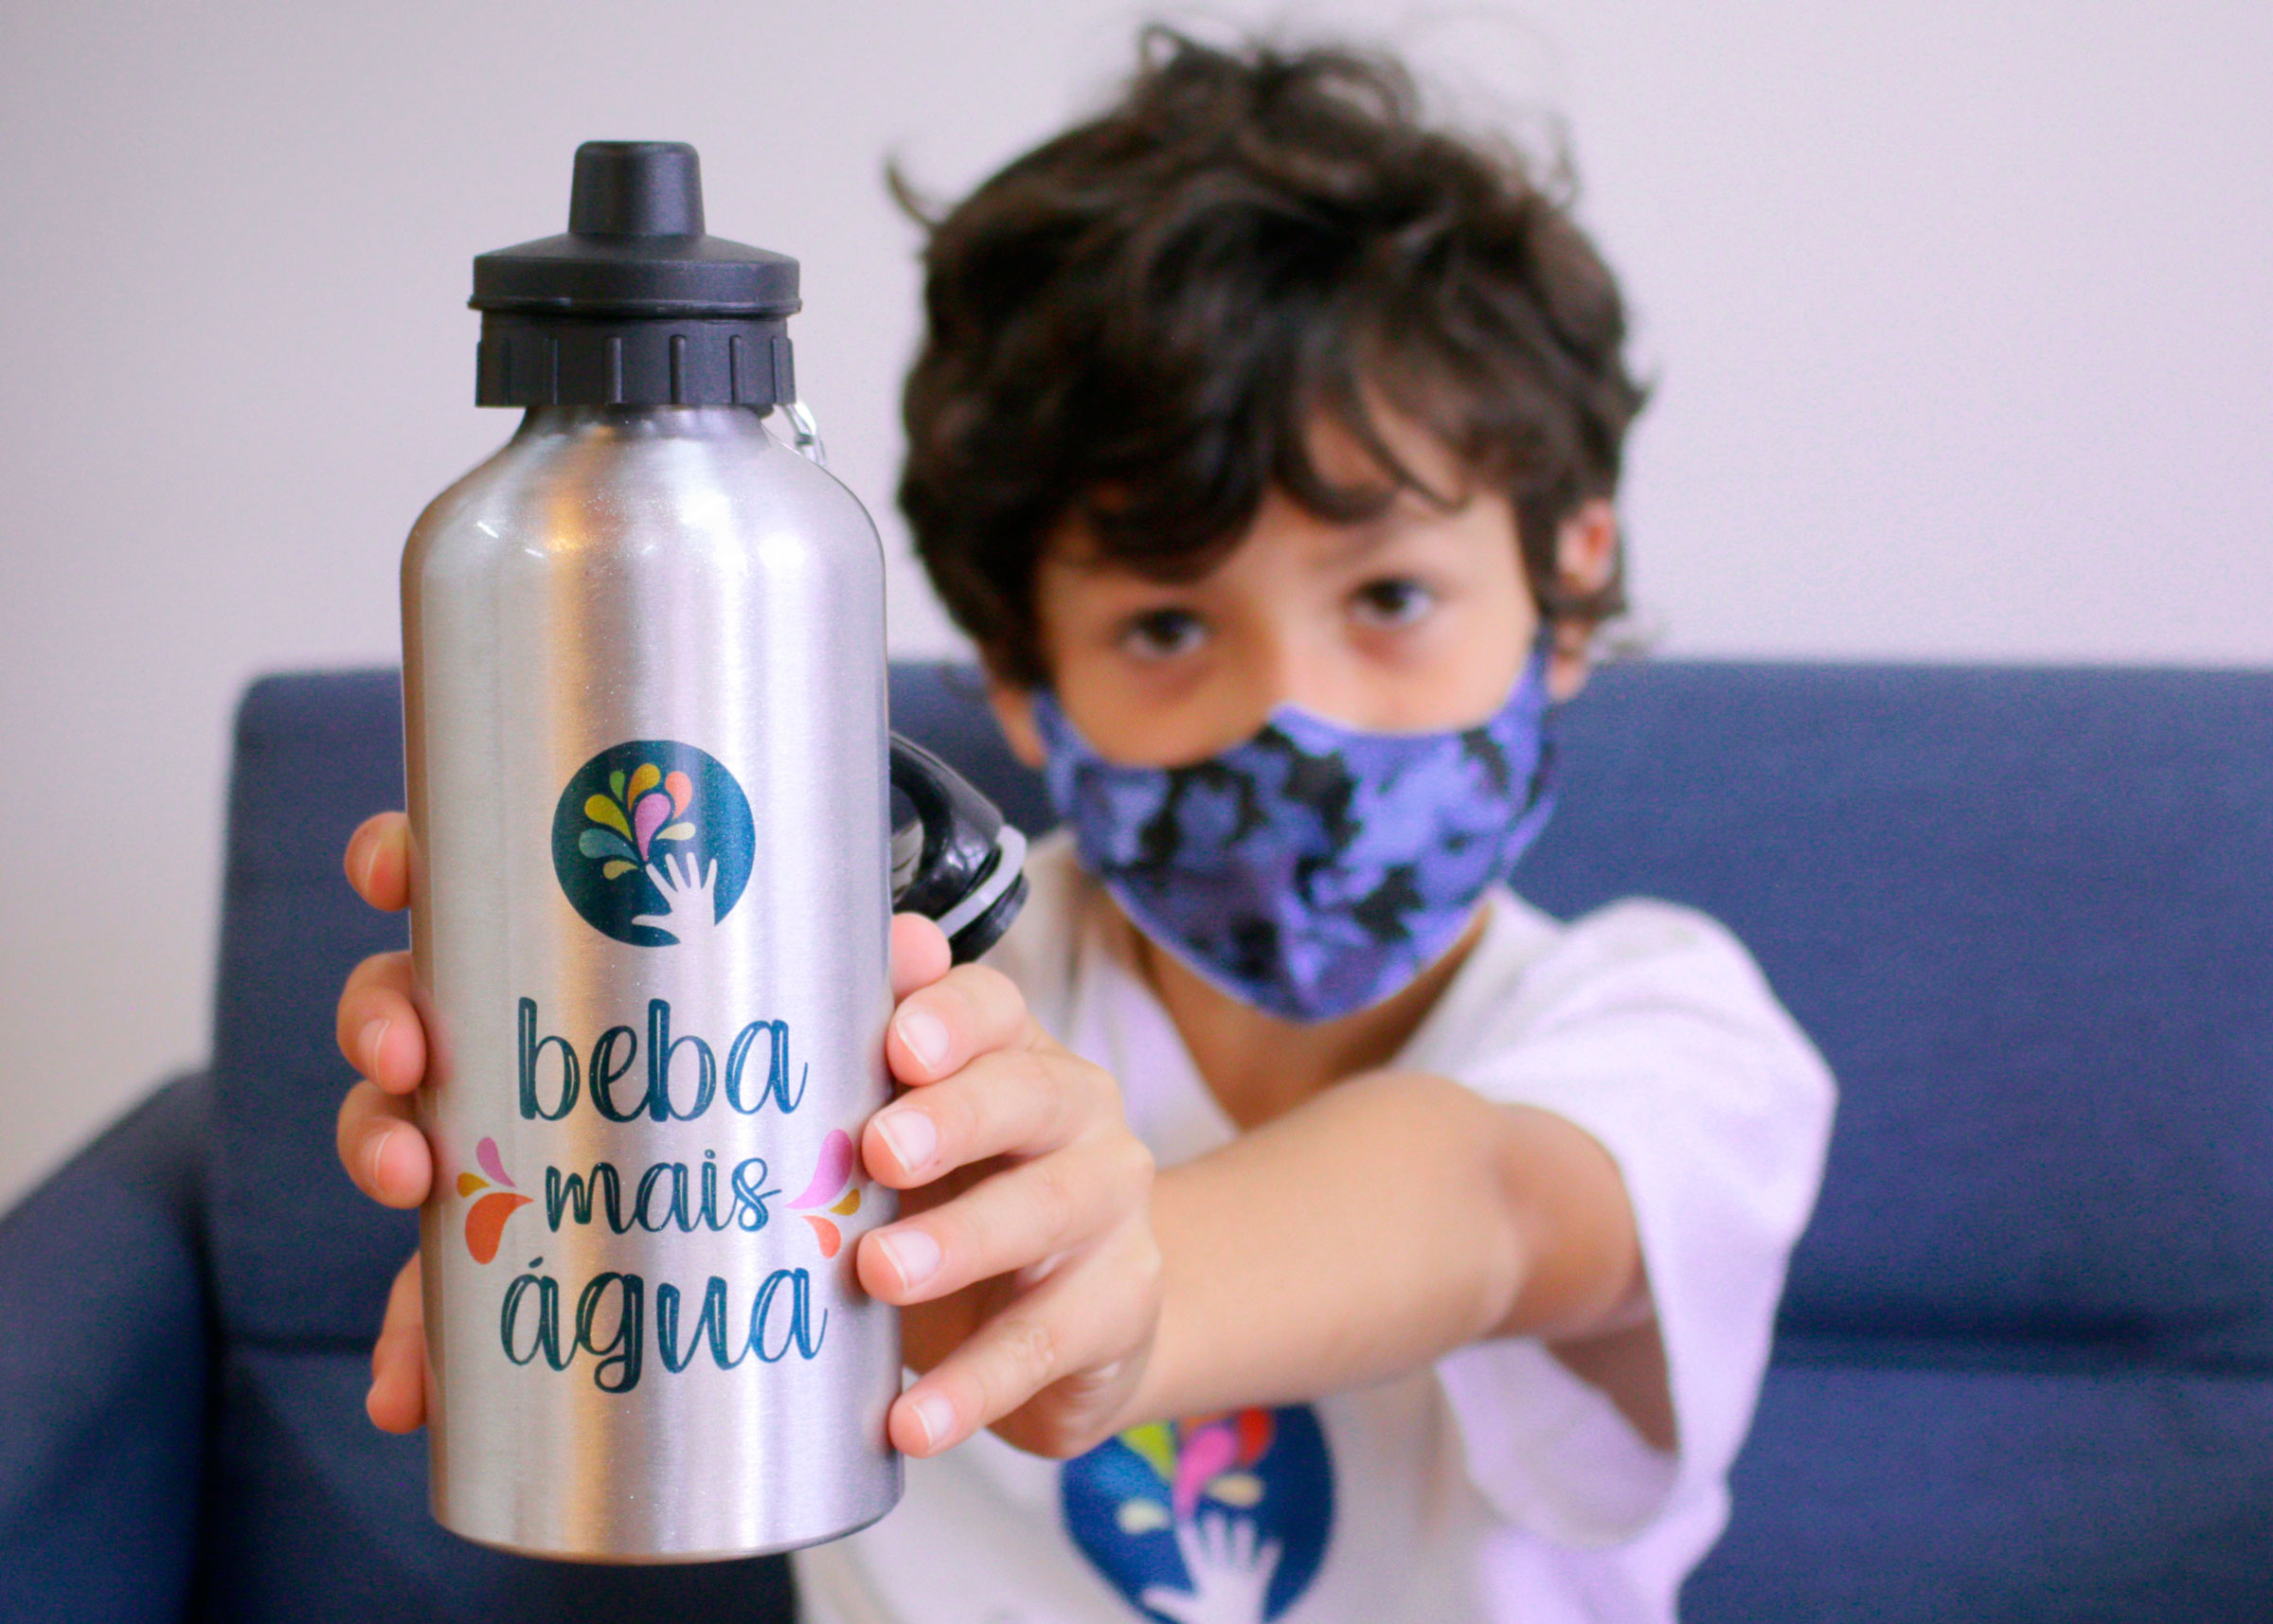 Um menino usando máscara segura apontando para frente uma garrafa escrito beba mais água.